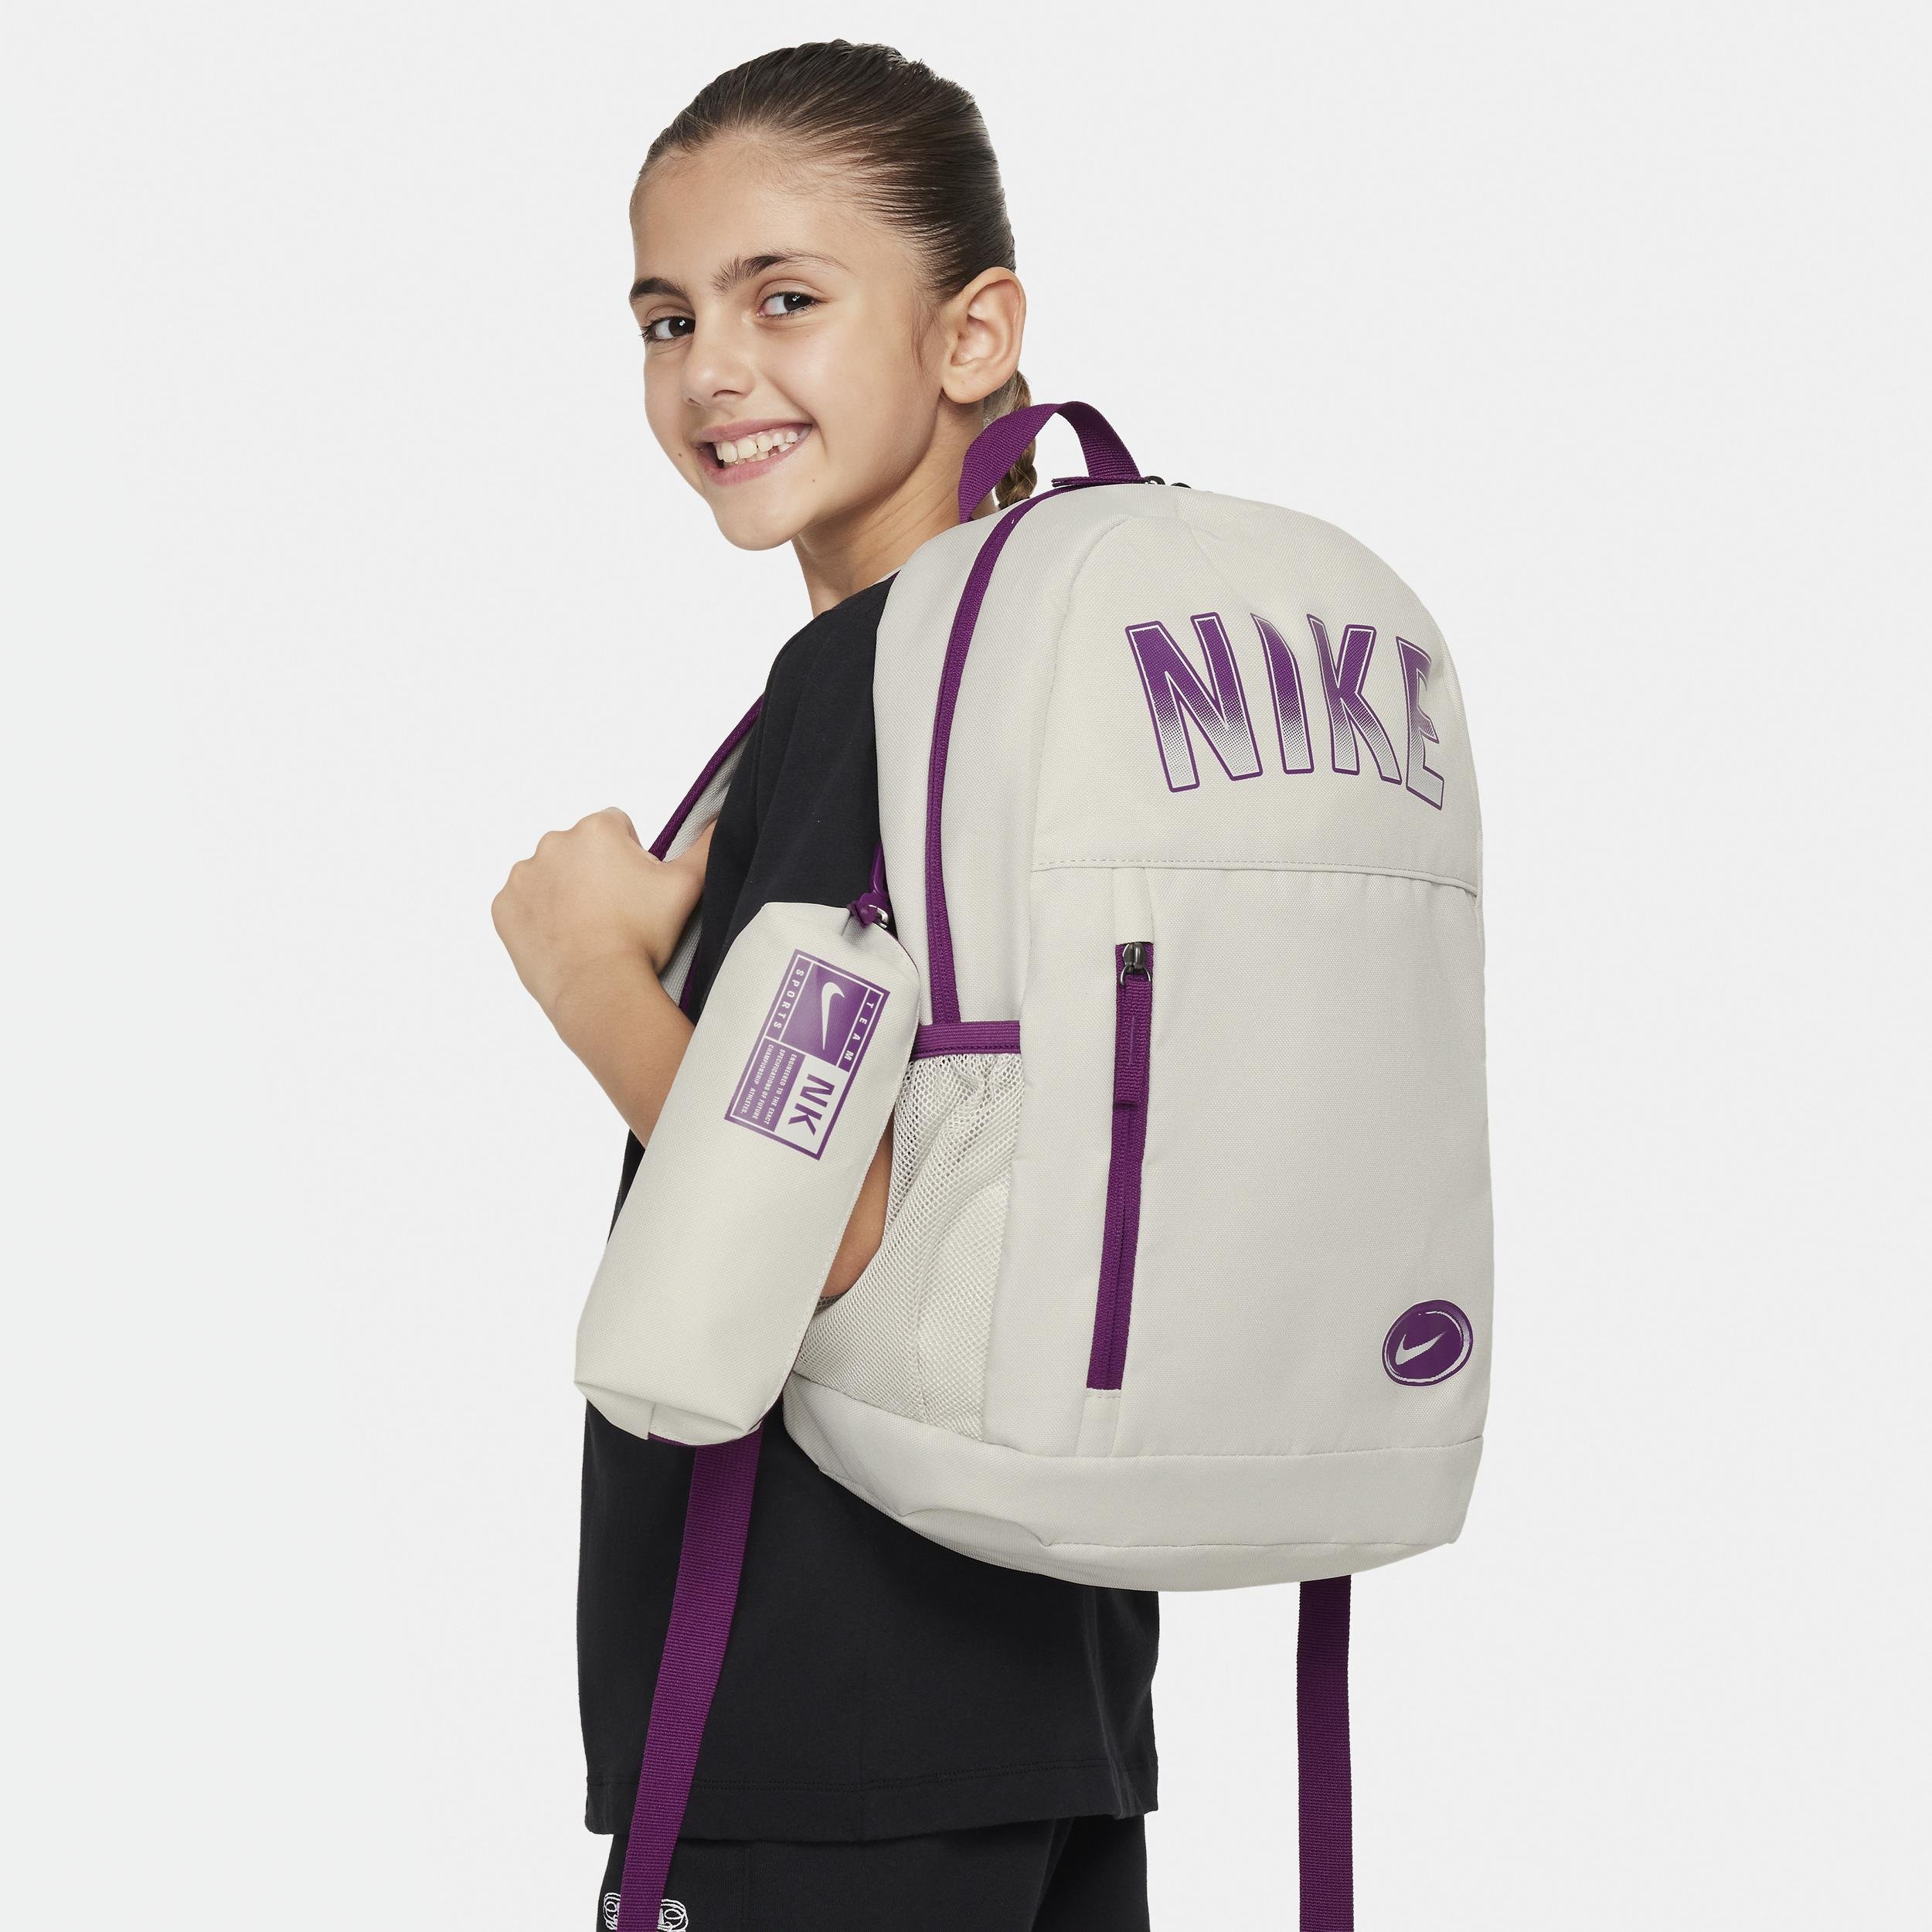 Nike Elemental Kids' Backpack (20L) by NIKE